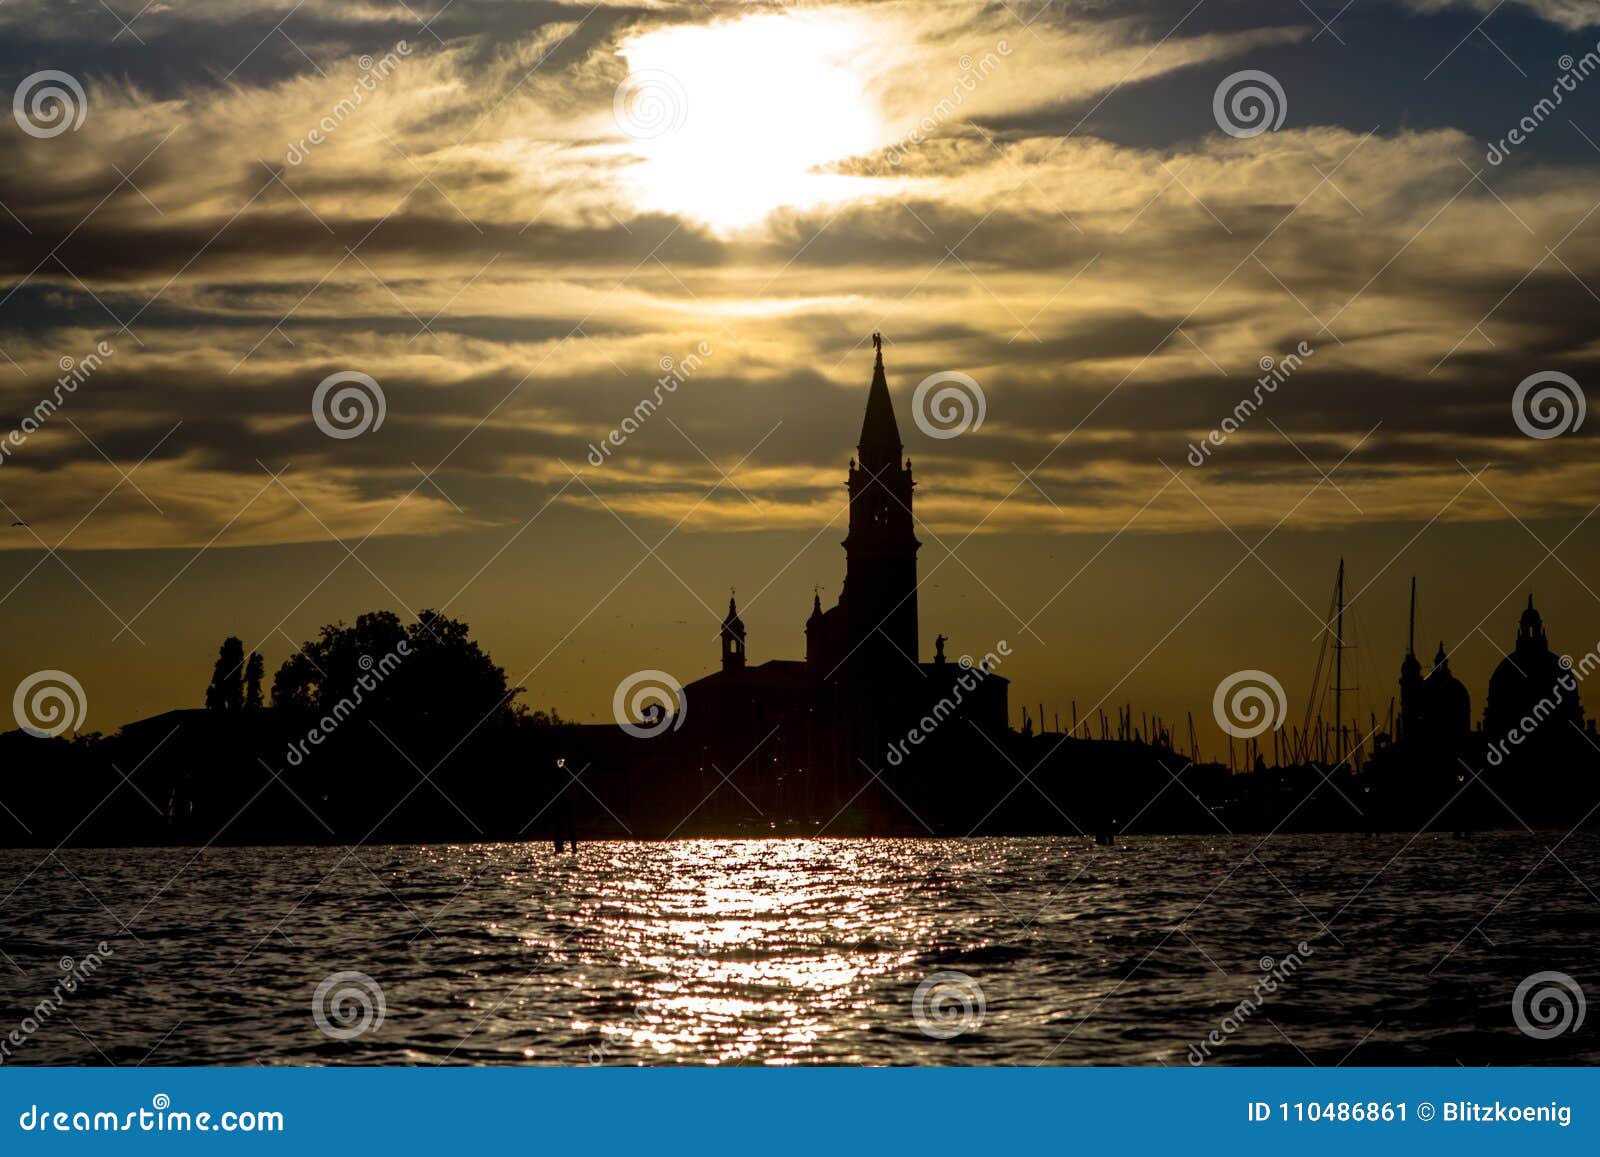 Sunset View of San Giorgio Maggiore in Venice Stock Image - Image of ...